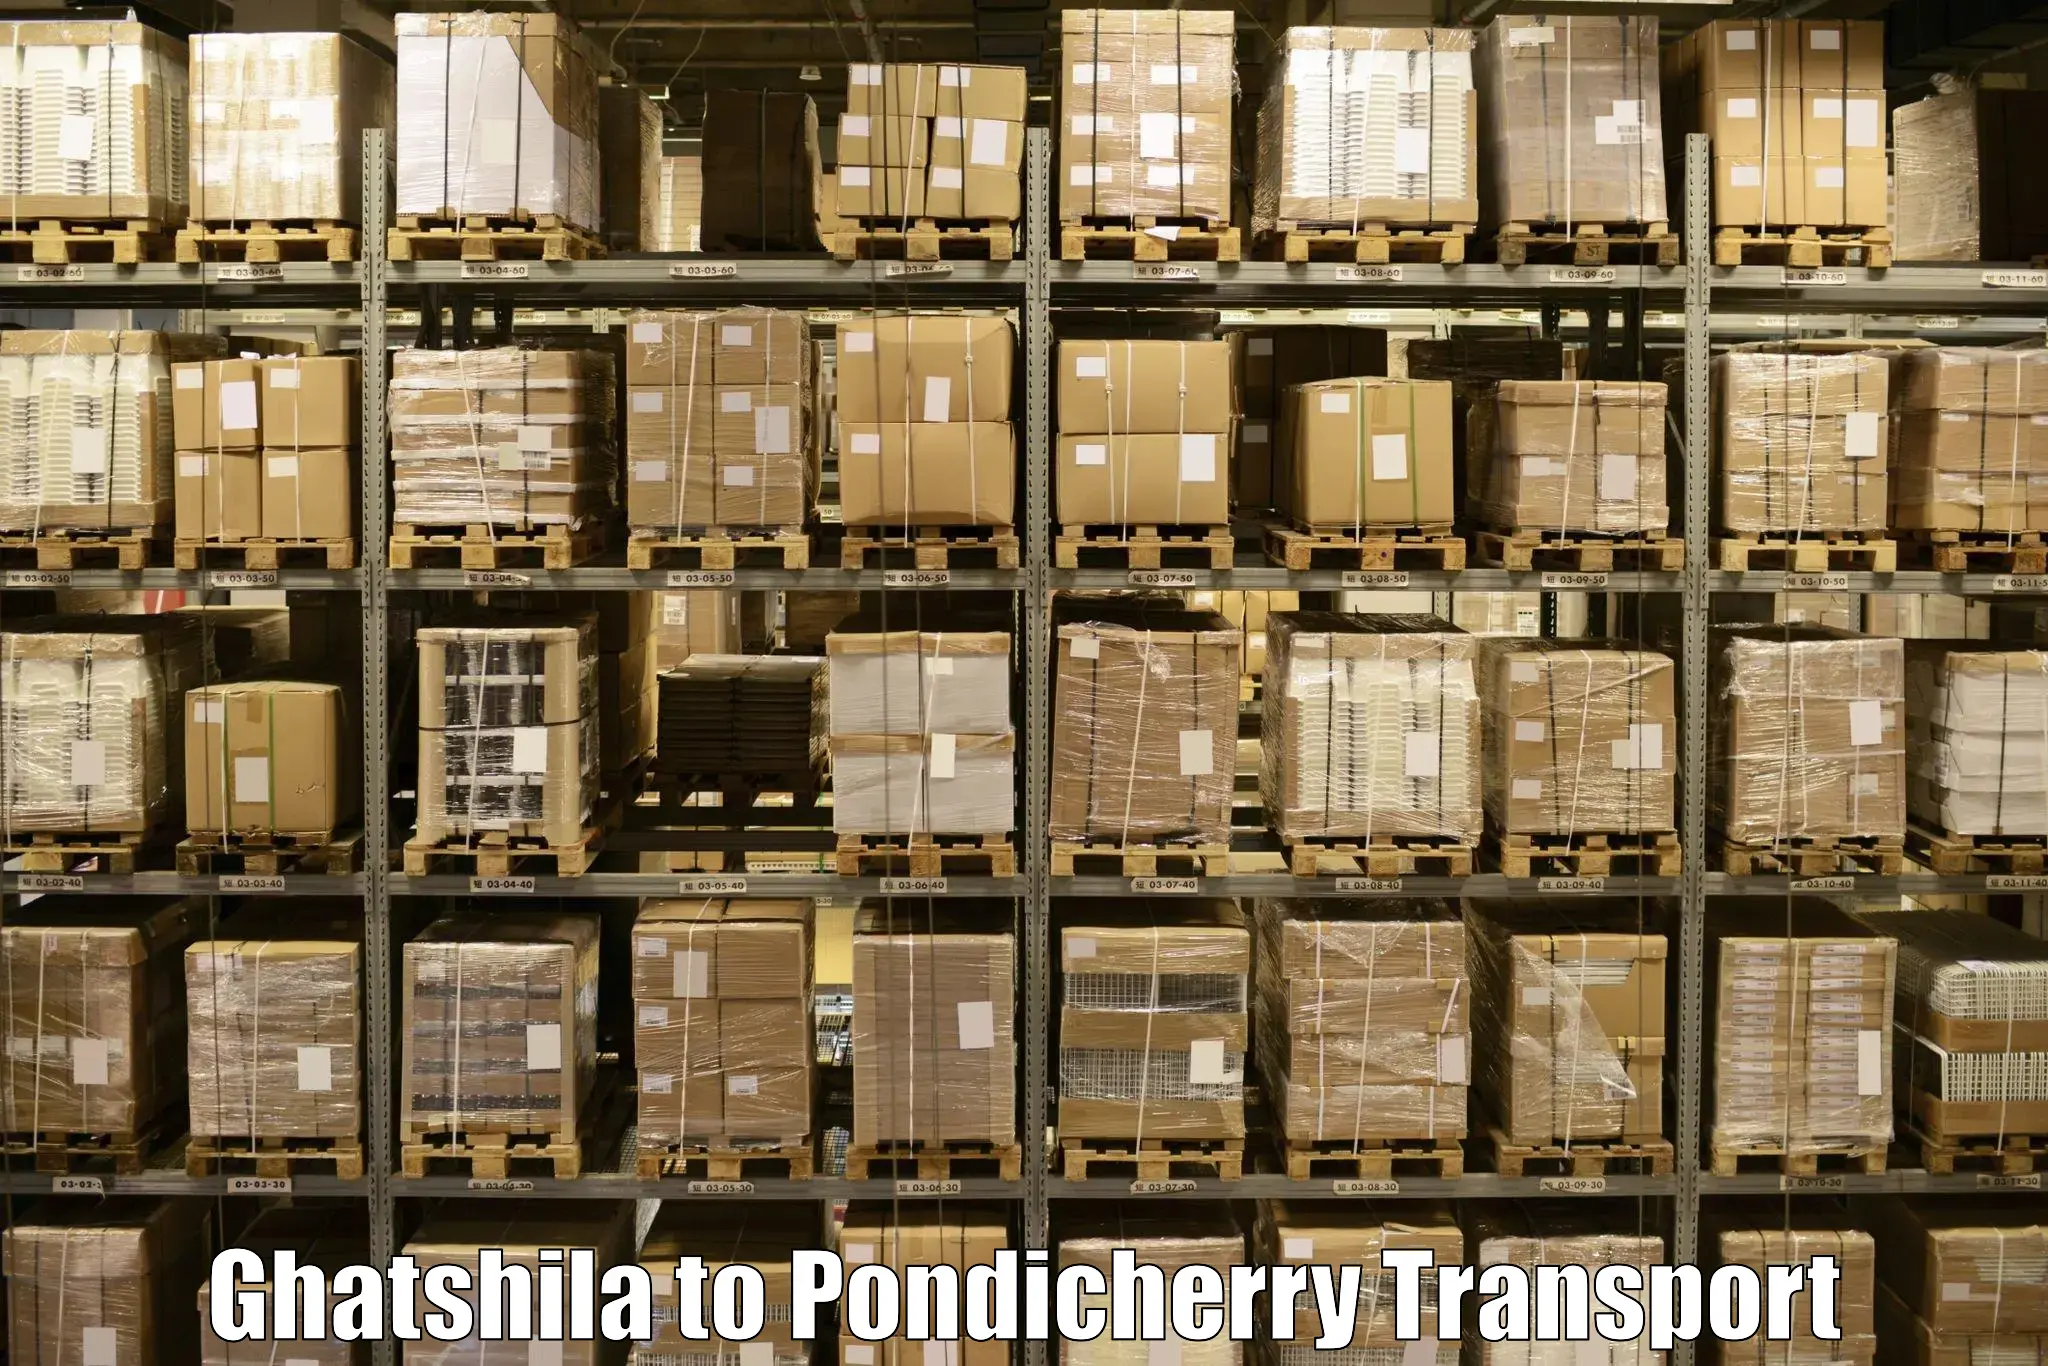 Online transport in Ghatshila to Pondicherry